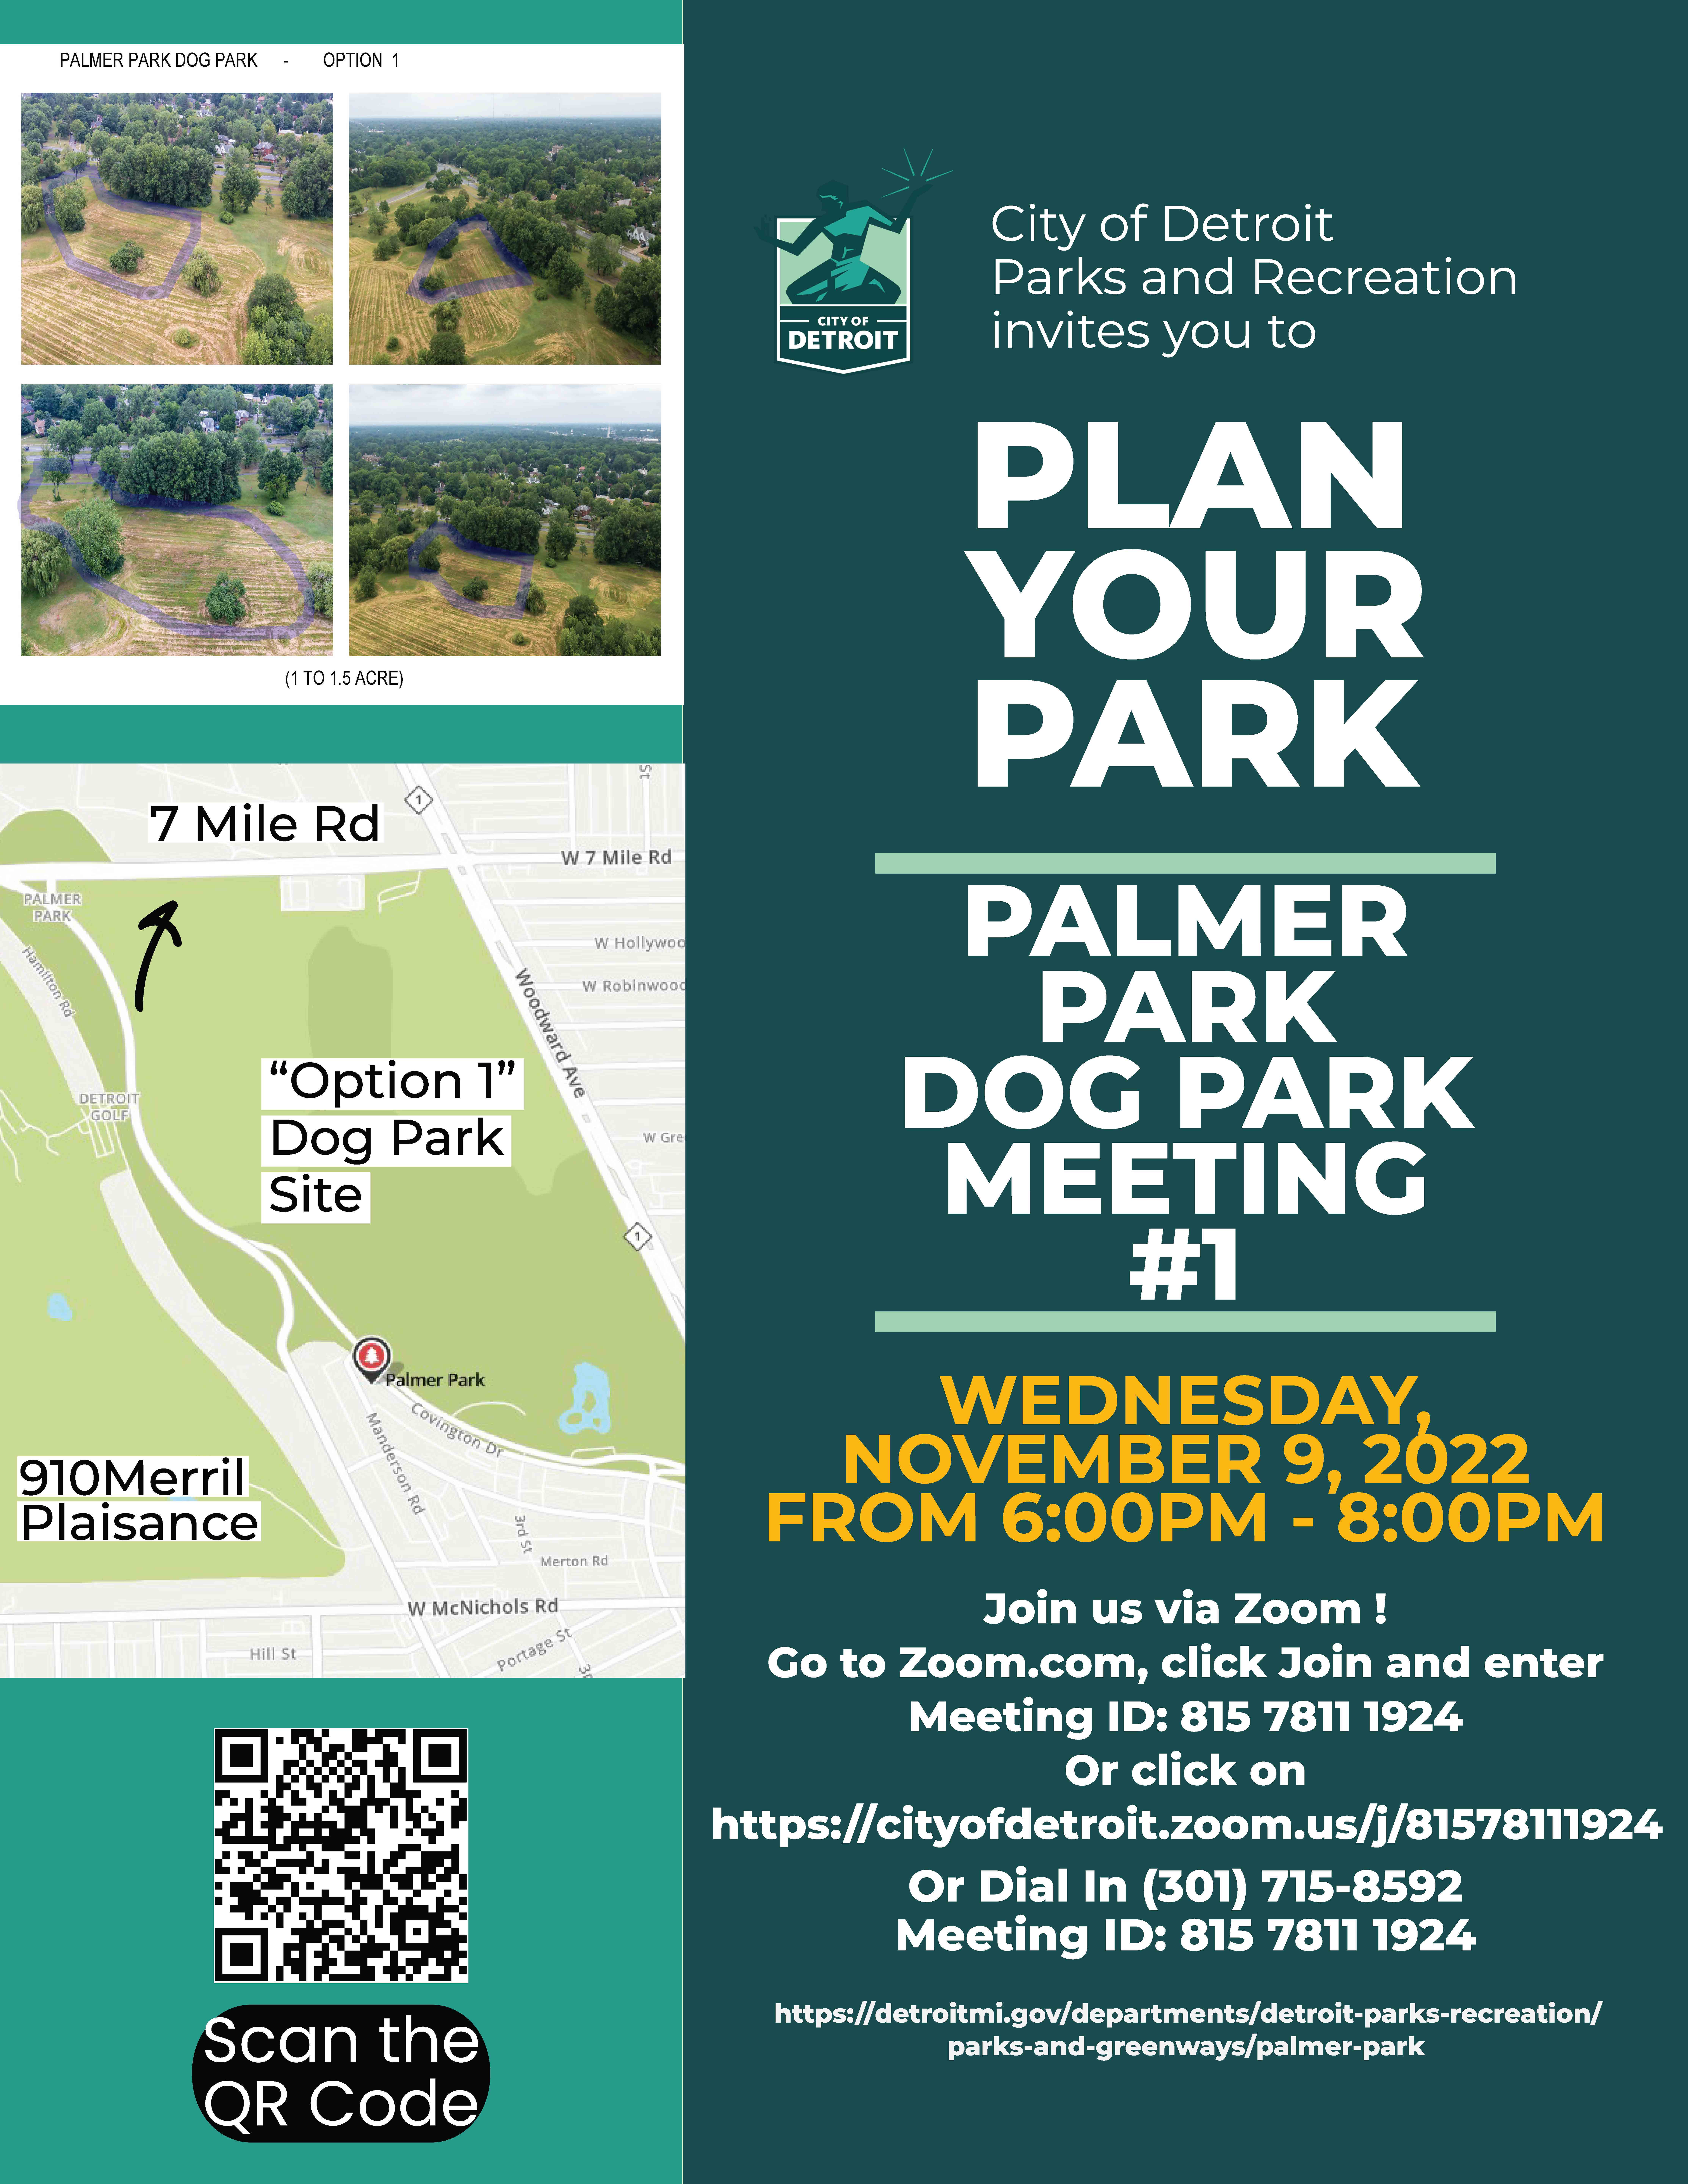 Flyer for Palmer Park Dog Park Meeting #1